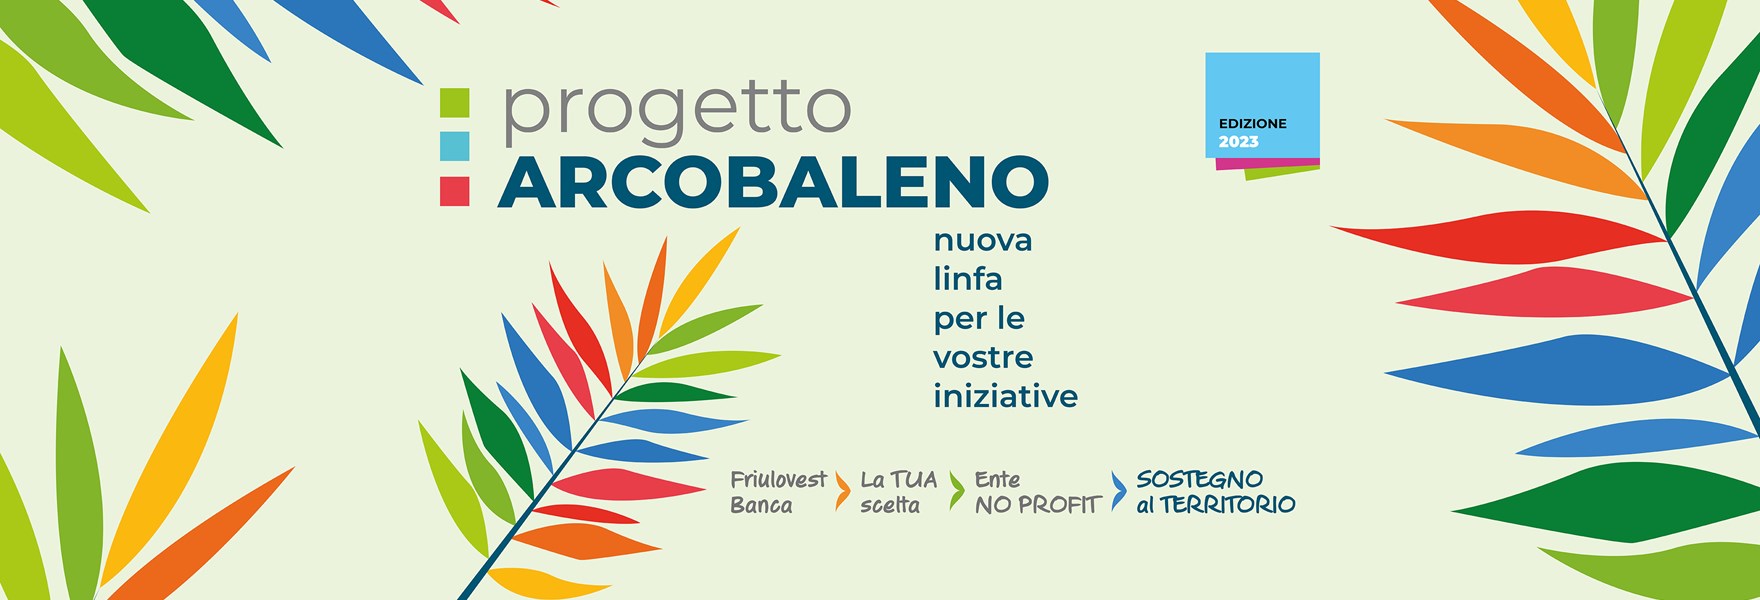 Progetto Arcobaleno Banner Sito 